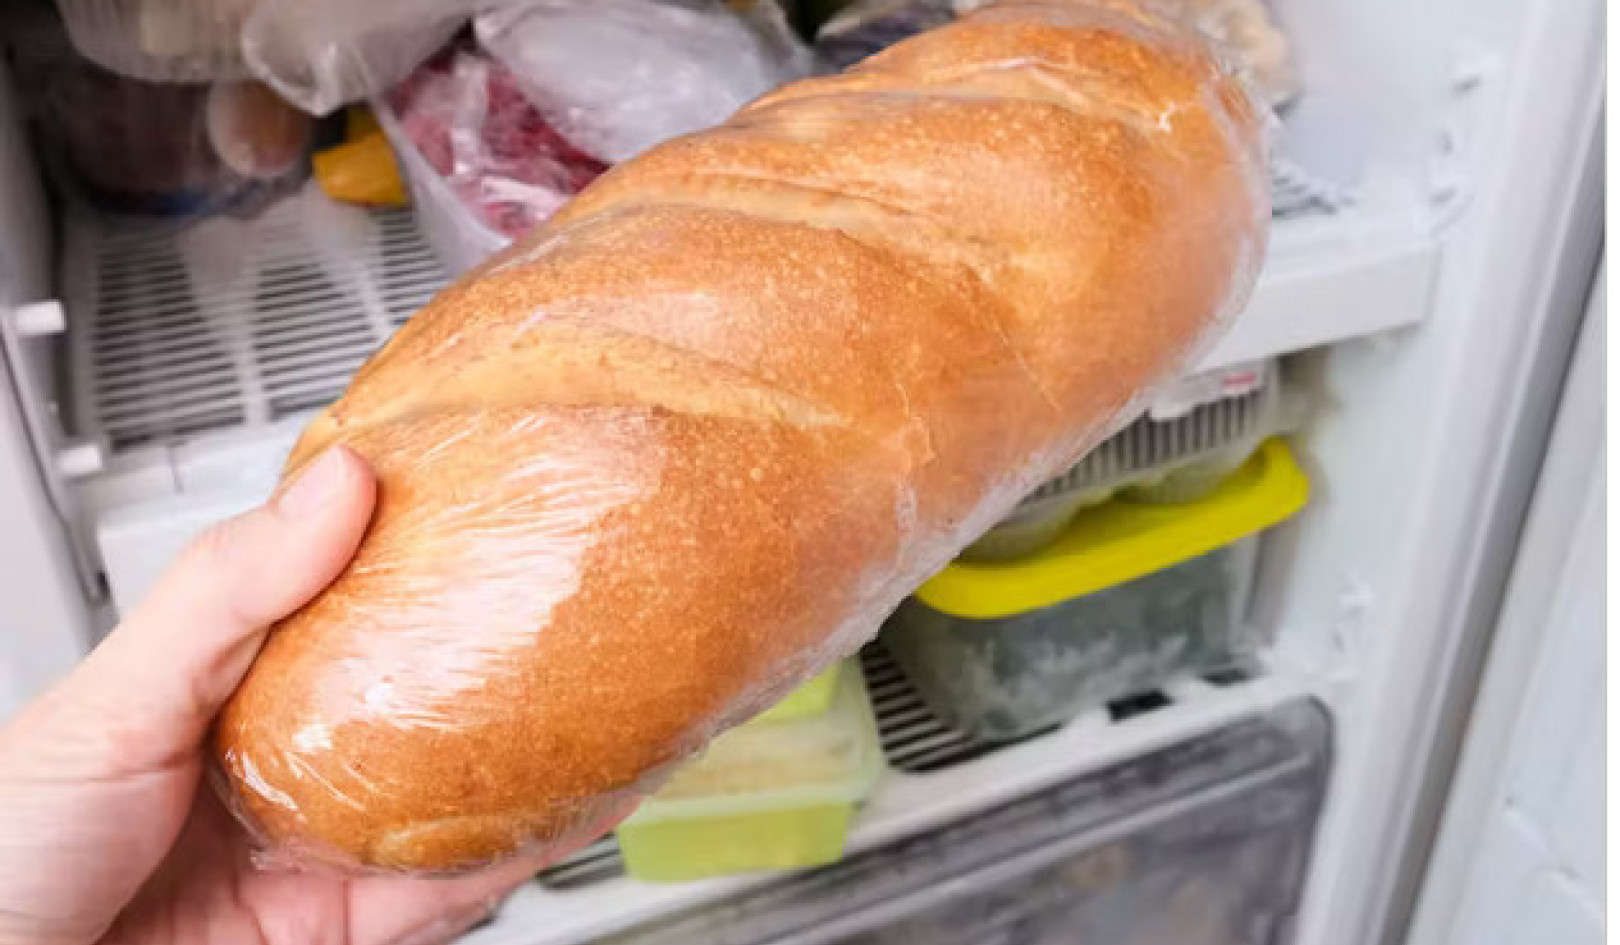 Ekmeğin Dondurulması Daha Sağlıklı Olur mu? Gerçek Ortaya Çıktı